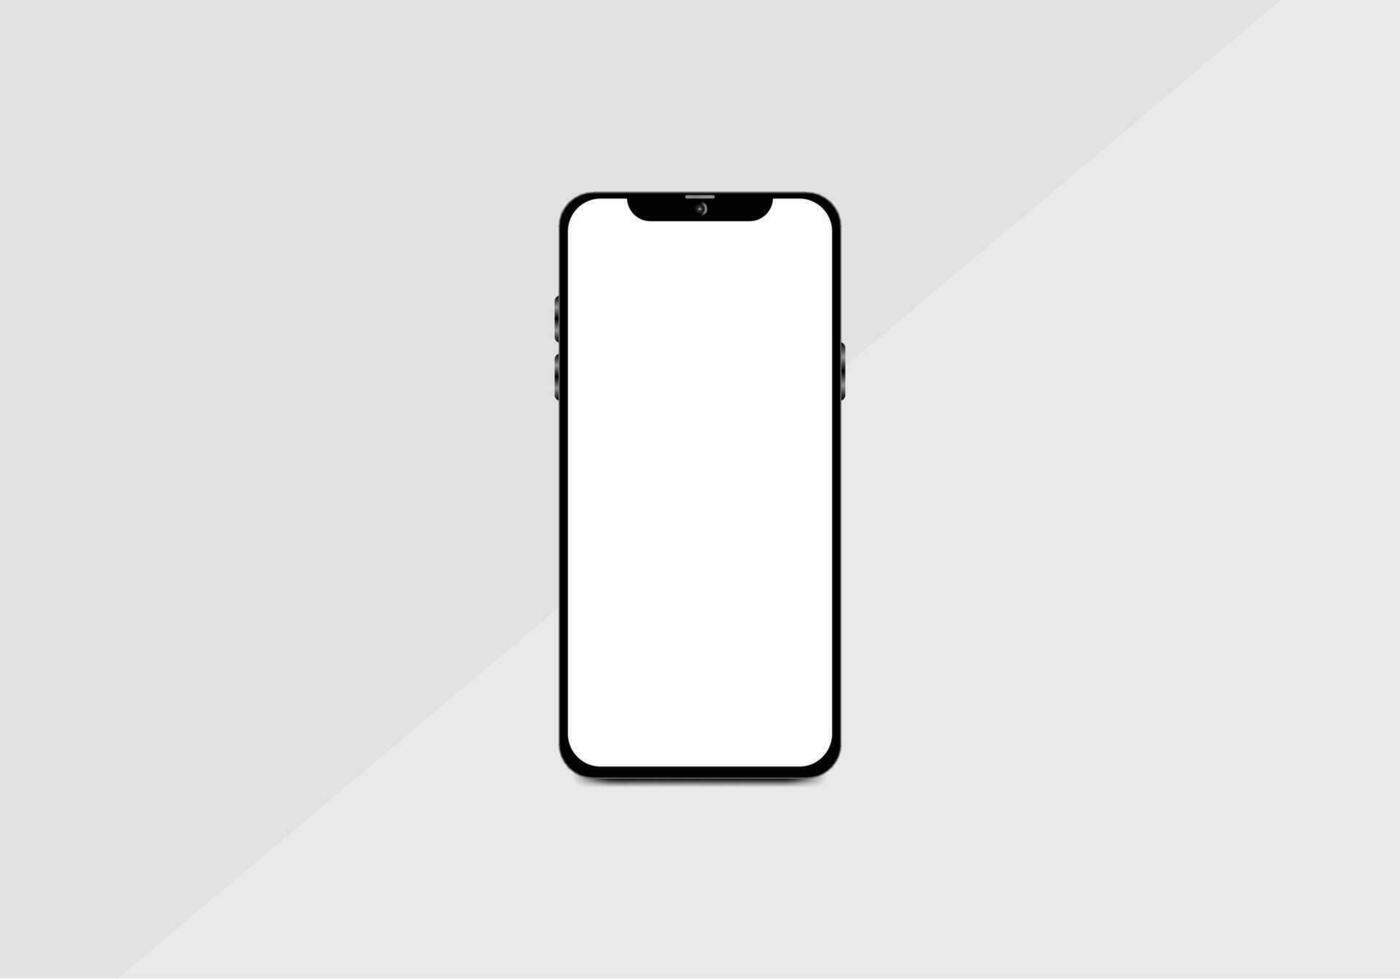 zwarte smartphone met transparante schermen. mockup-ontwerp voor smartphones. vector